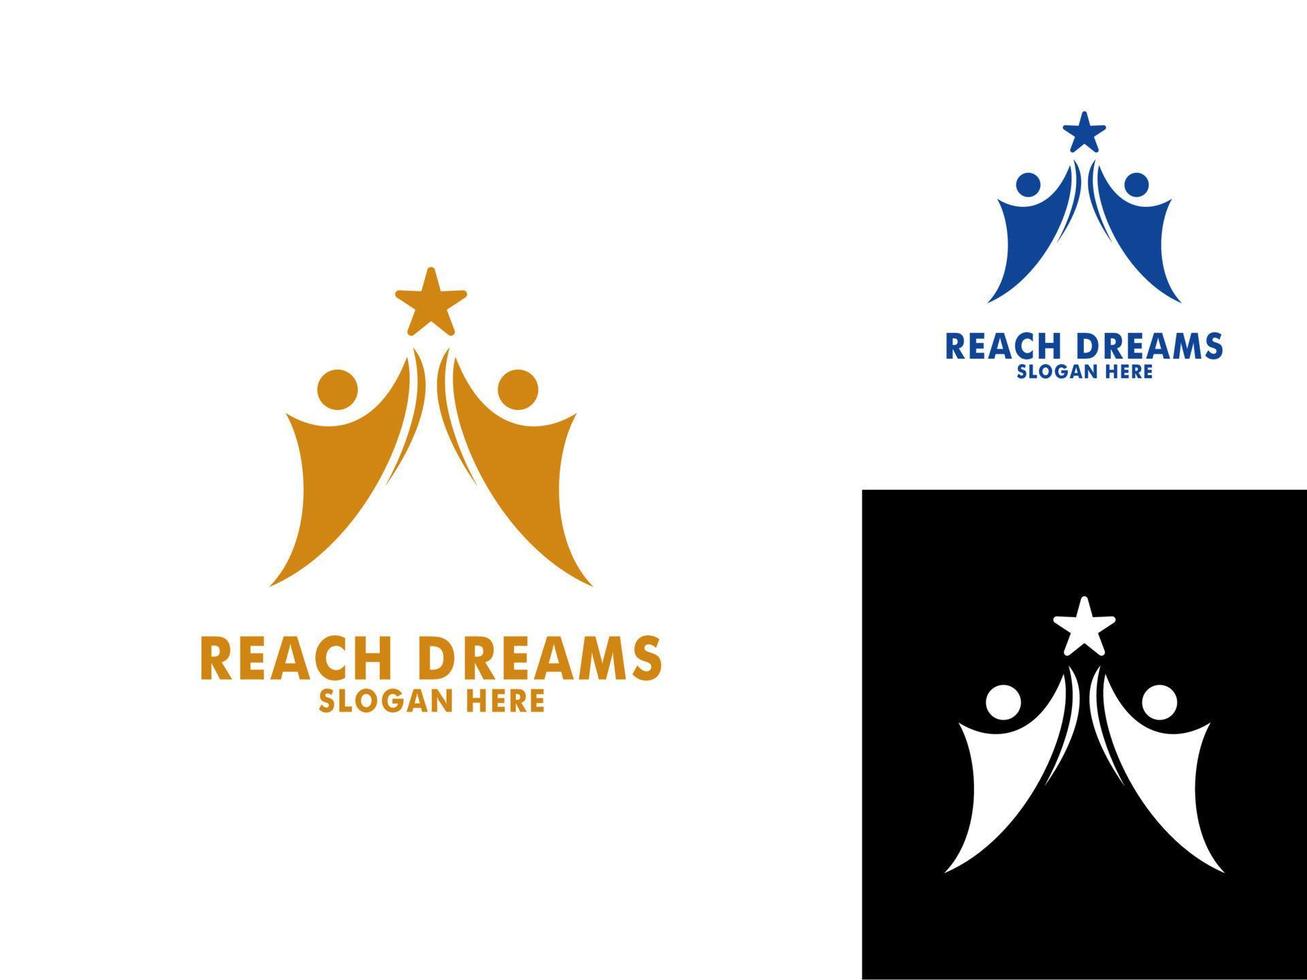 raggiungendo sognare logo, astratto umano raggiungere sogni, successo, obbiettivo creativo simbolo idea logo concetto. vettore